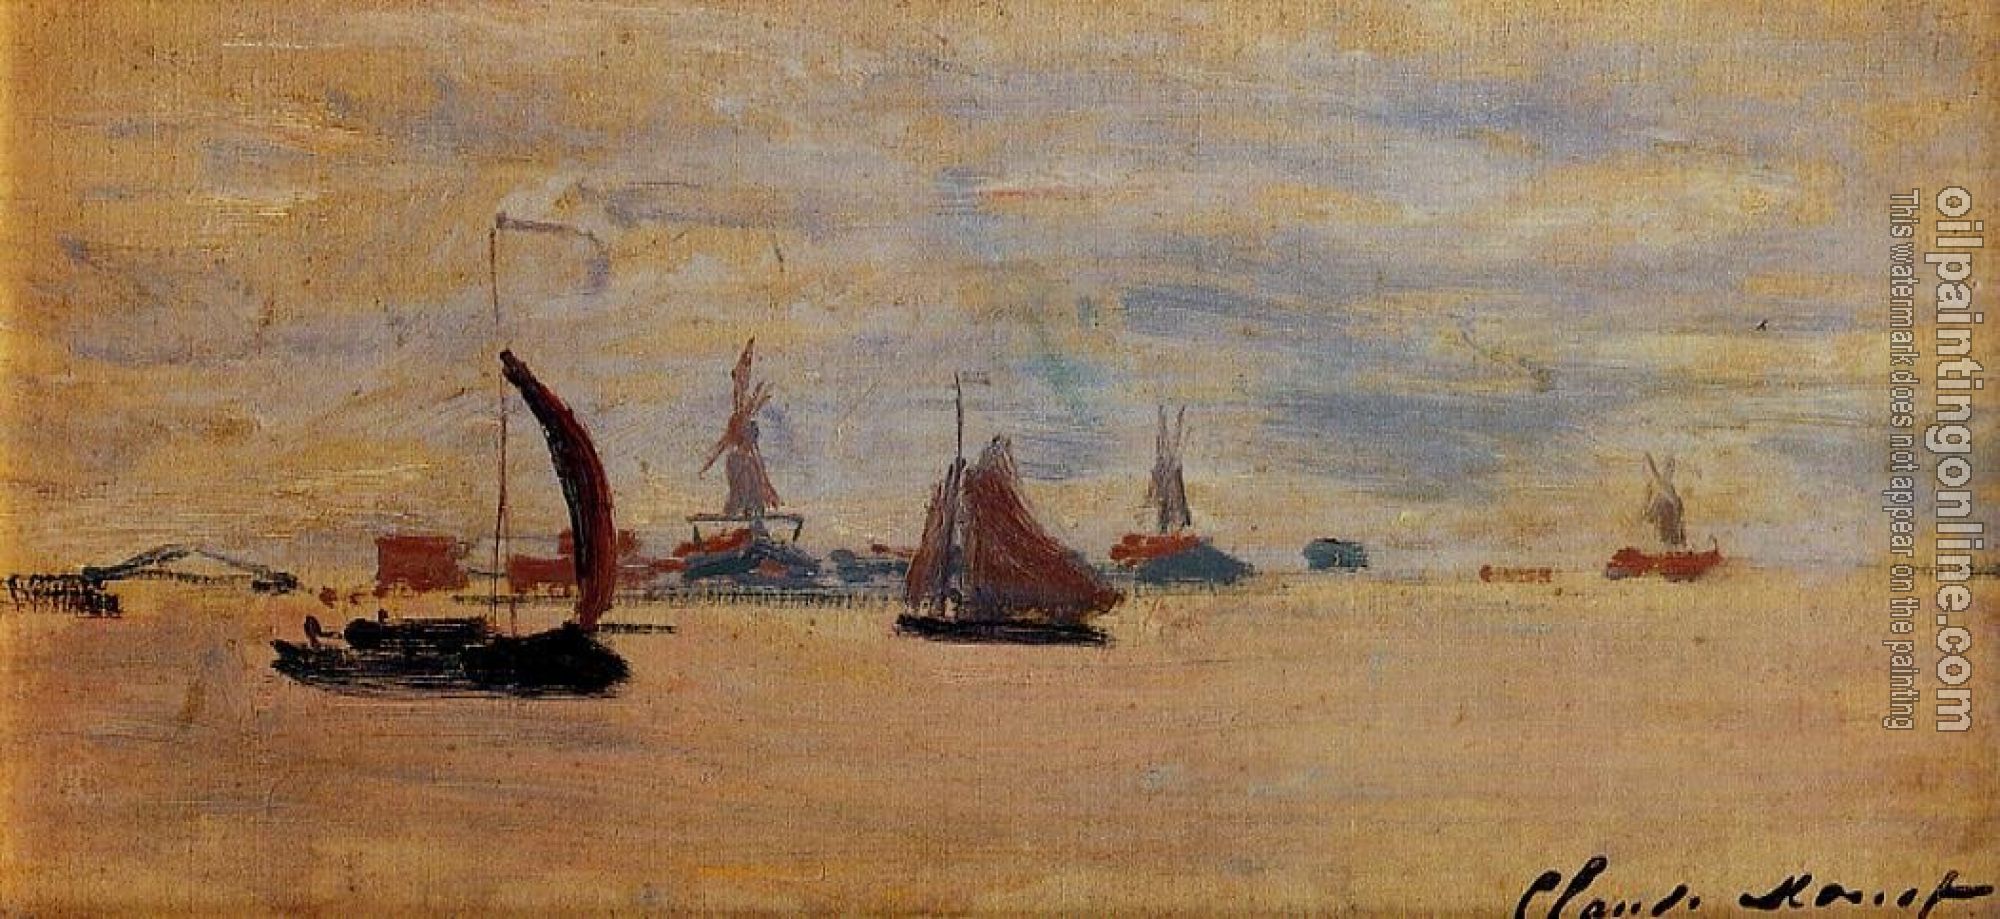 Monet, Claude Oscar - View of the Voorzaan